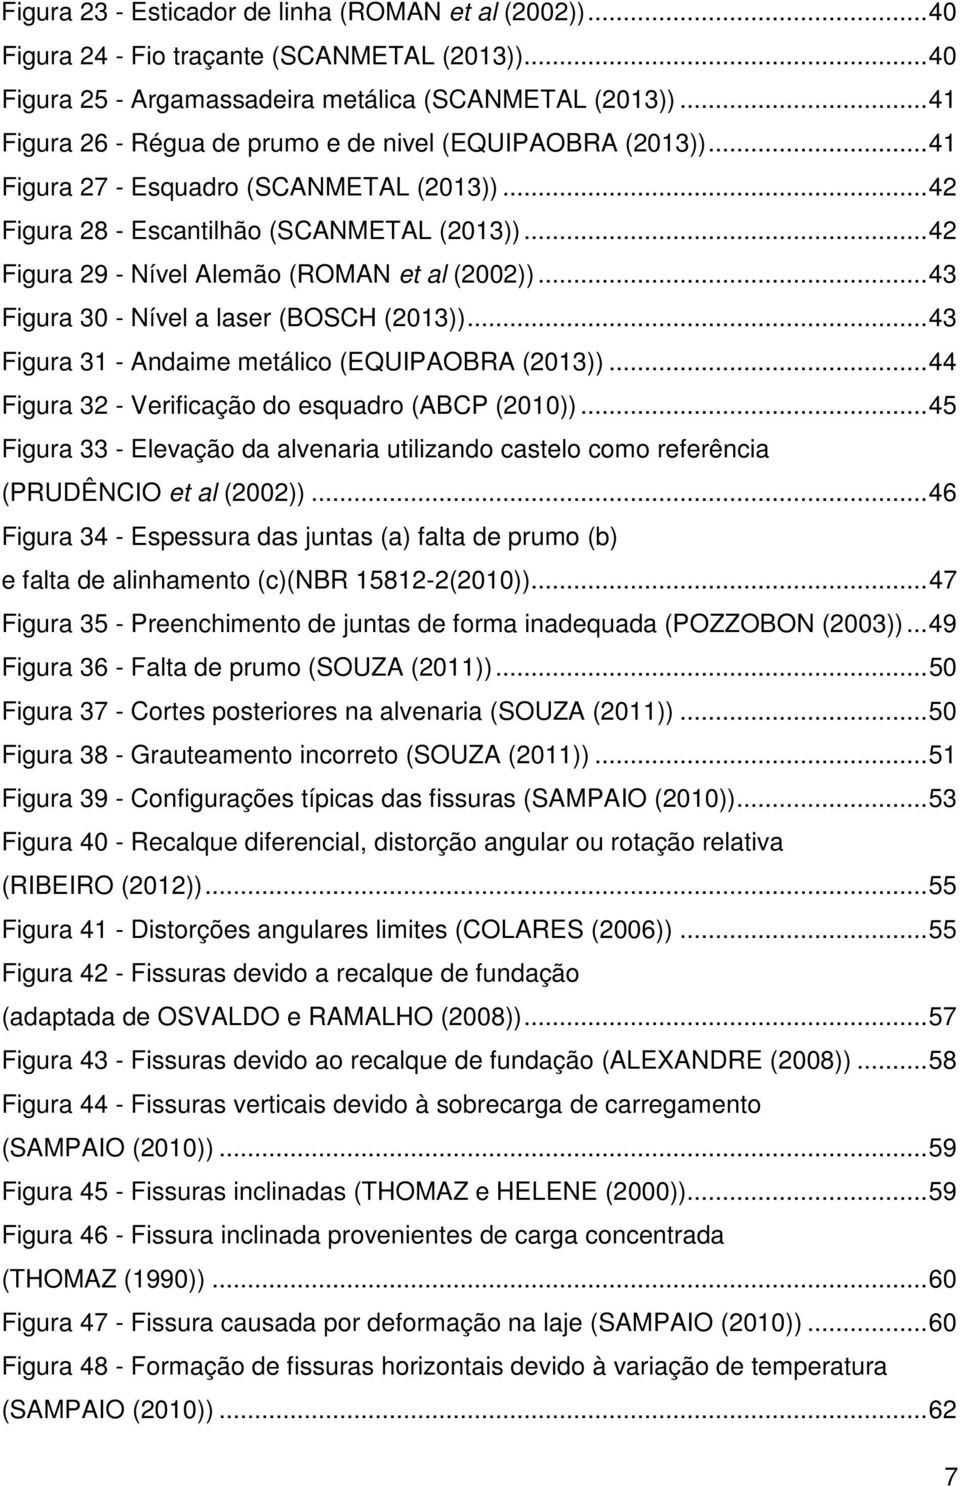 .. 42 Figura 29 - Nível Alemão (ROMAN et al (2002))... 43 Figura 30 - Nível a laser (BOSCH (2013))... 43 Figura 31 - Andaime metálico (EQUIPAOBRA (2013)).